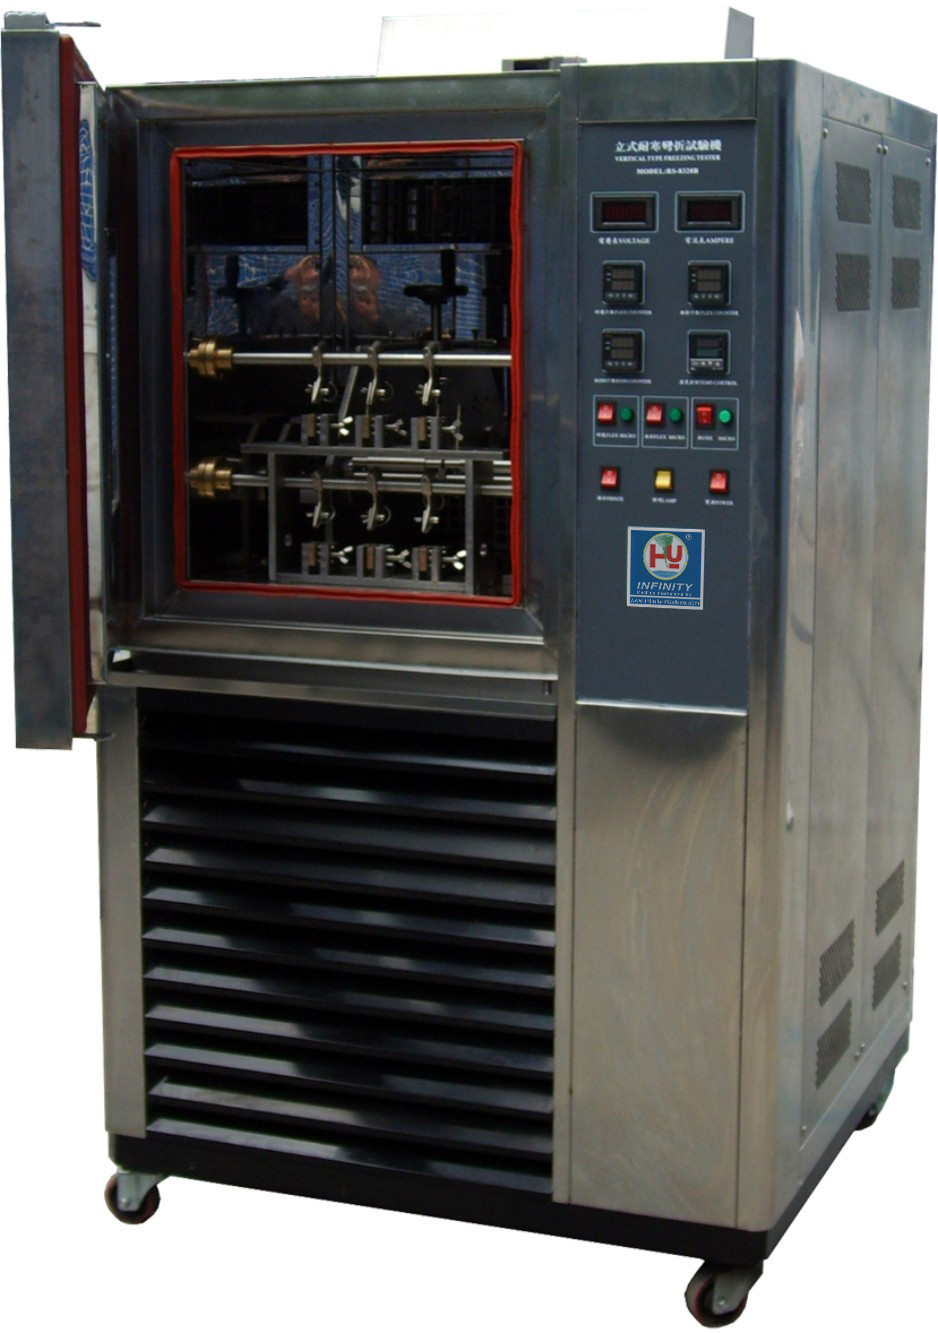 हार्डी क्षमता ASTM D1790 के लिए कार्यक्षेत्र पर्यावरण परीक्षण कक्ष उपकरण